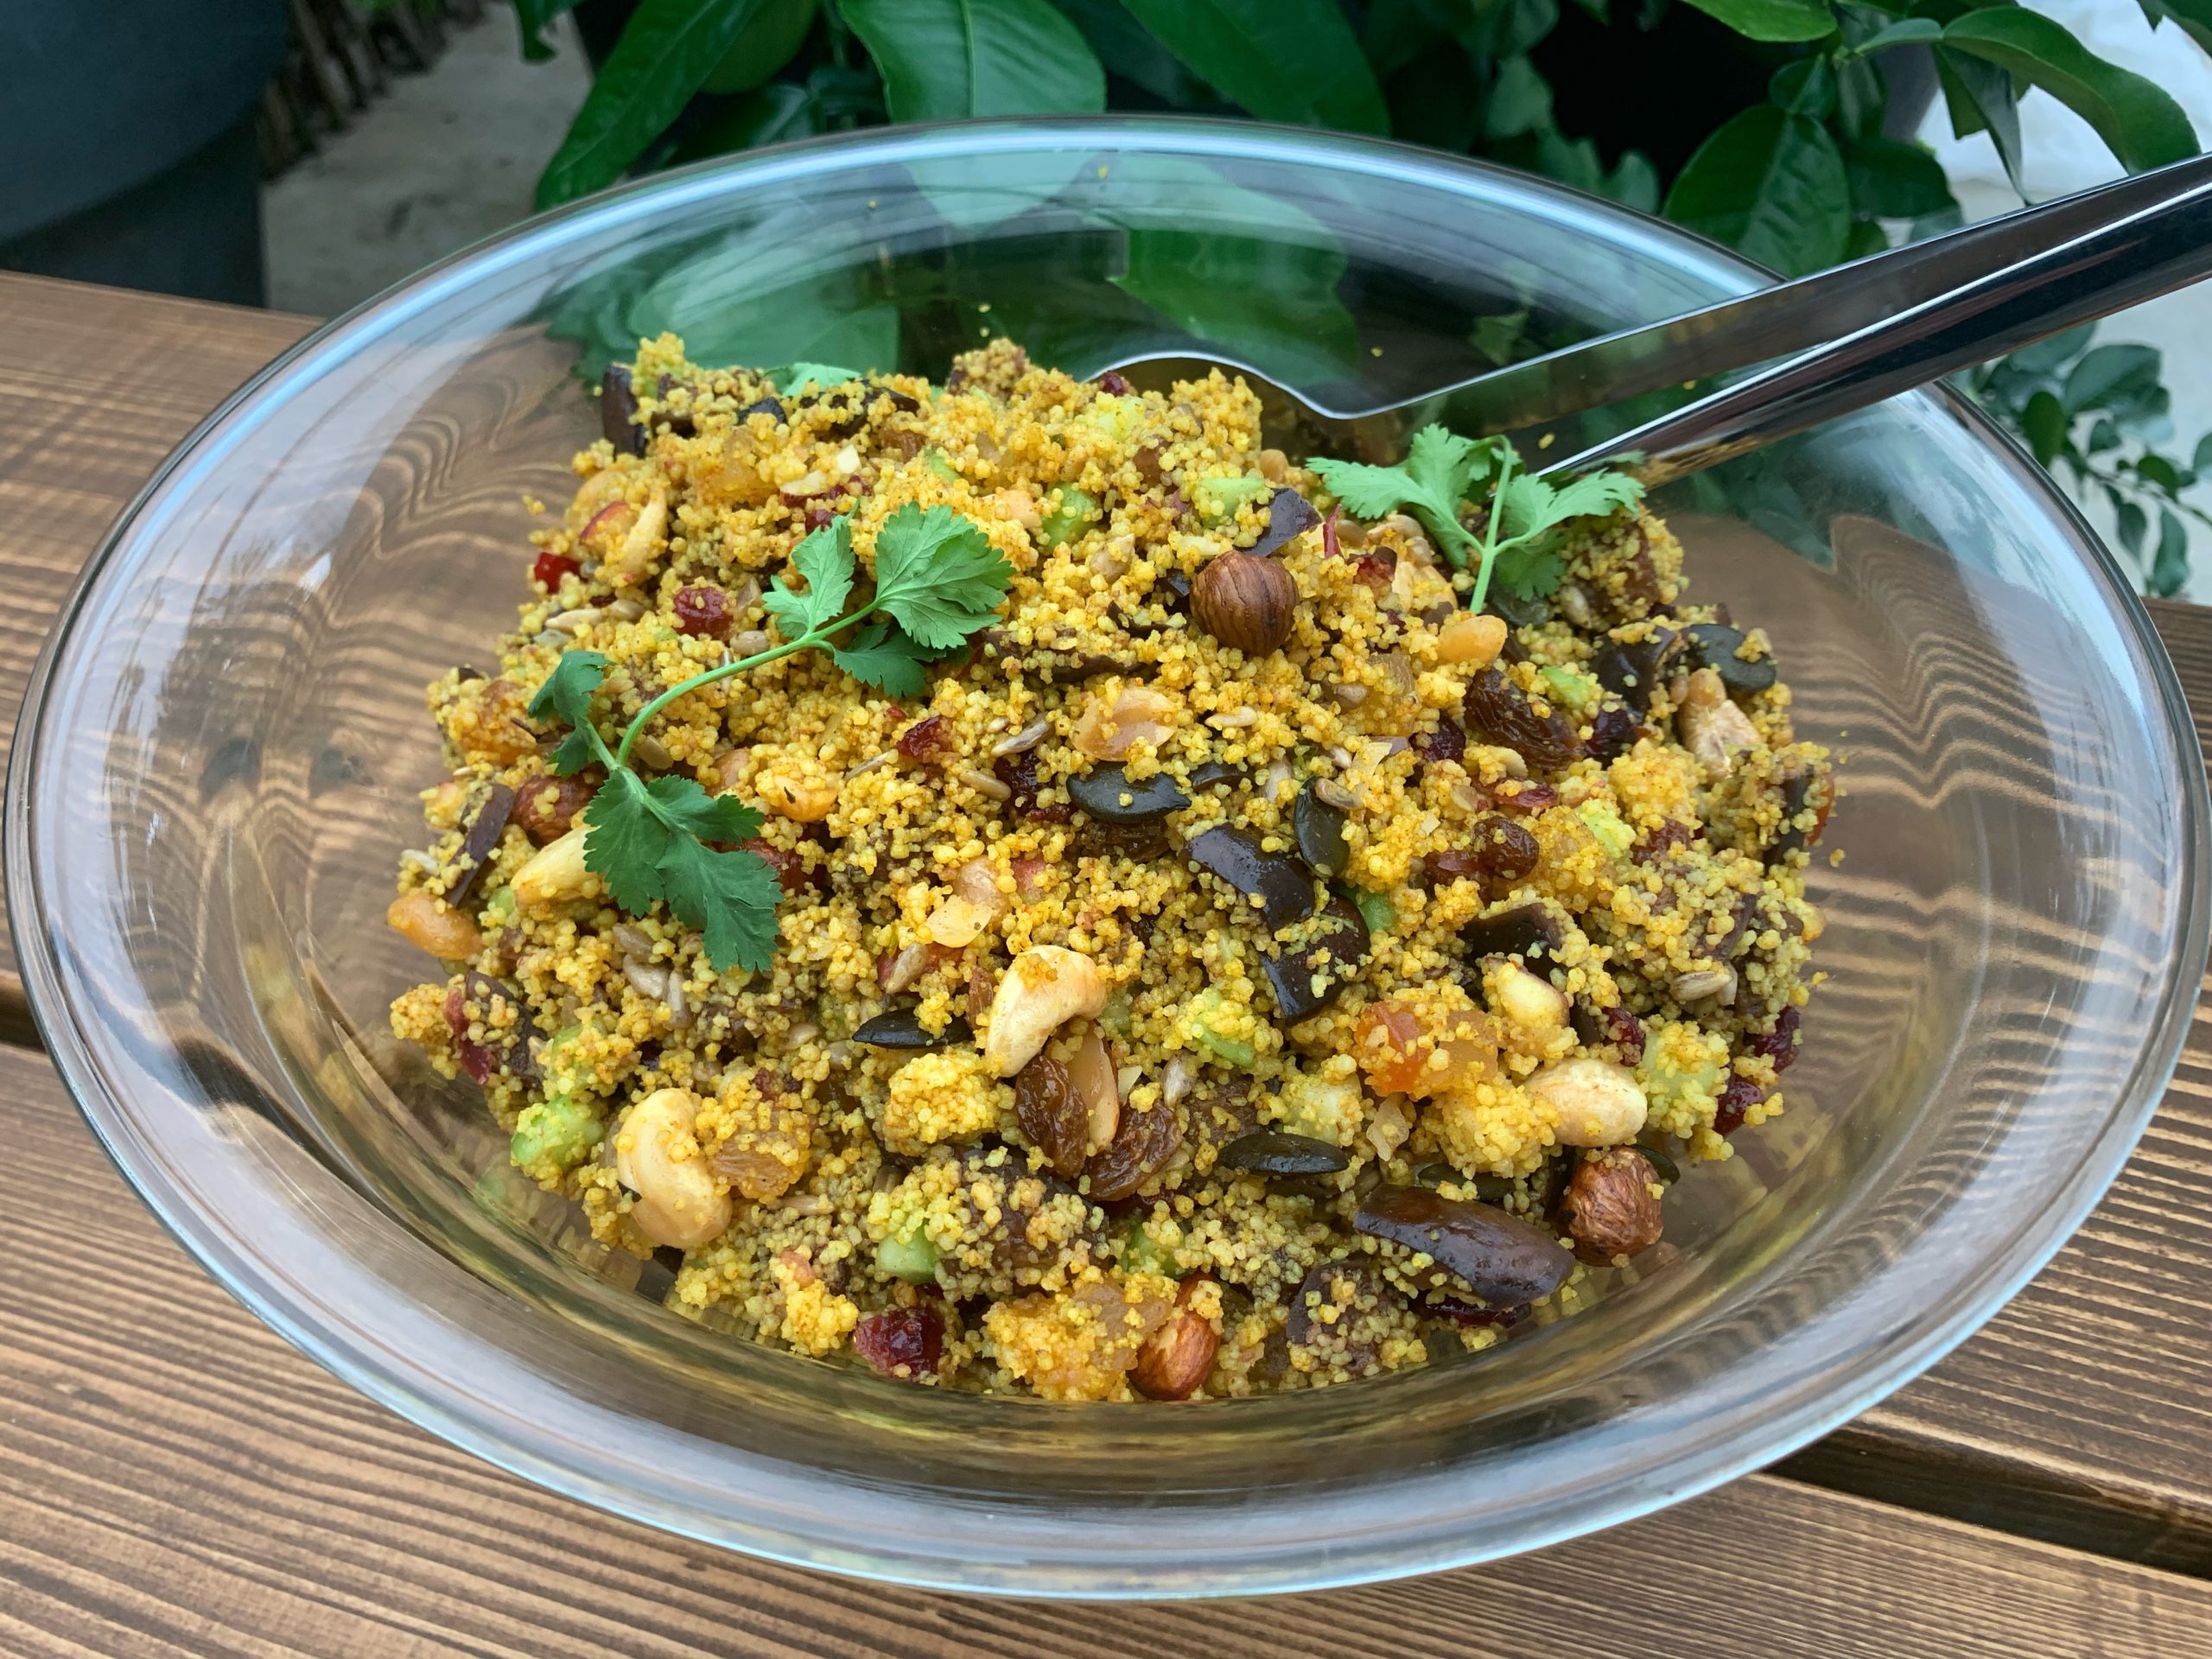 Couscous-Salat mit Trockenfrüchten, Nüssen und Kräutern